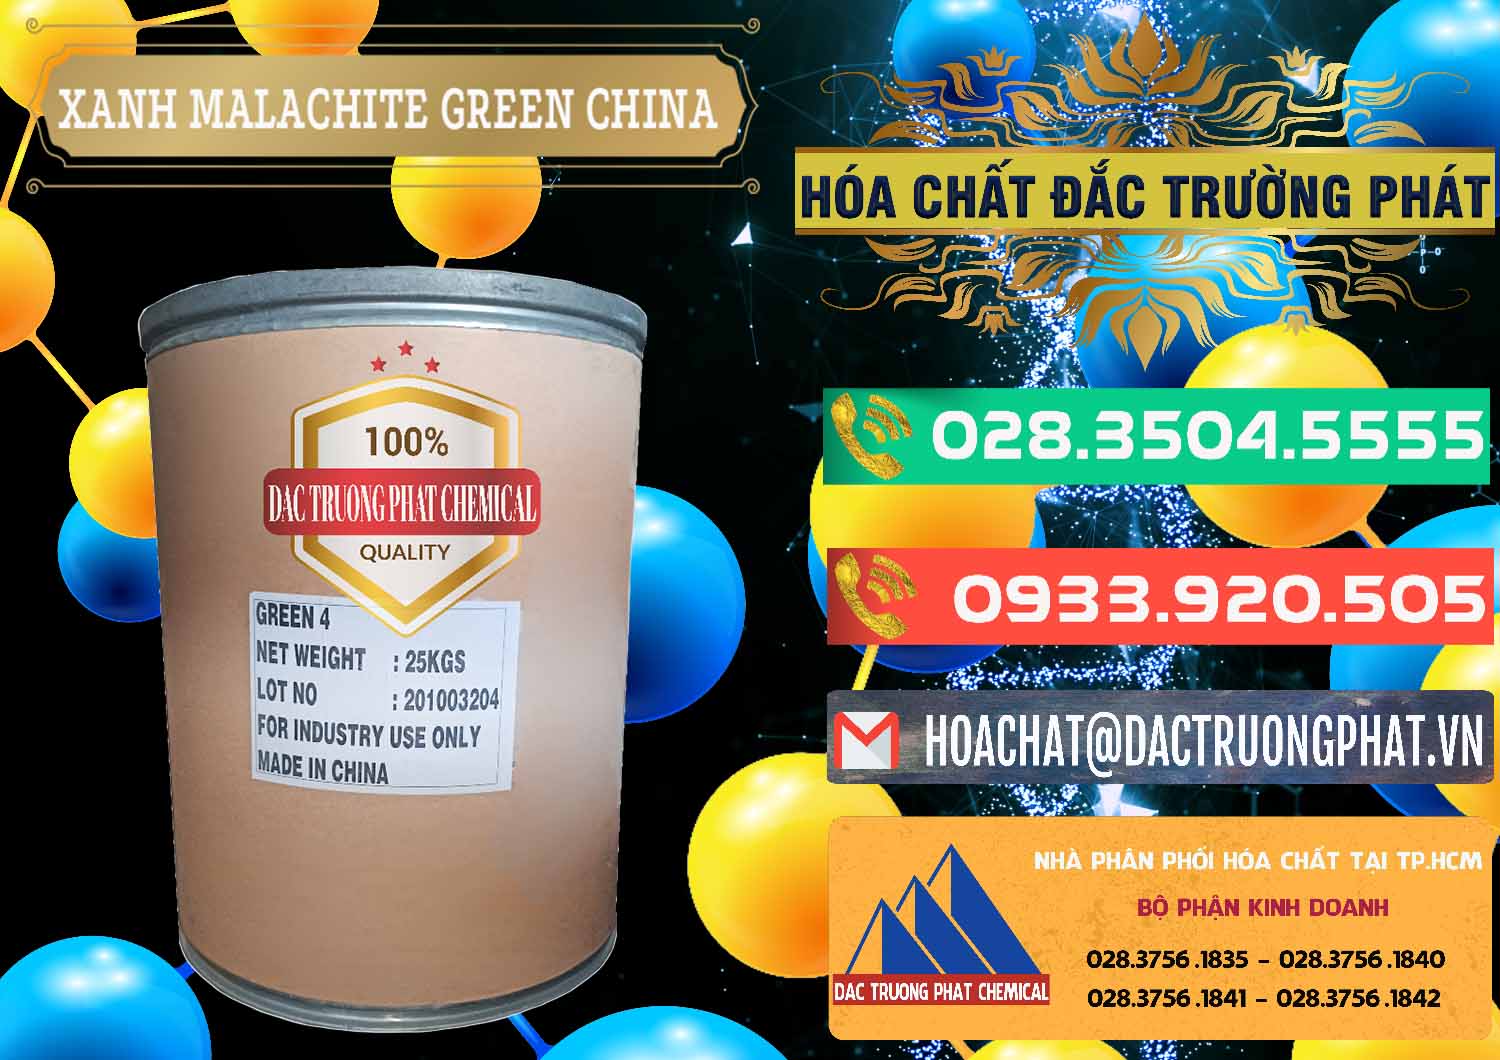 Chuyên cung ứng và bán Xanh Malachite Green Trung Quốc China - 0325 - Cty chuyên cung cấp & bán hóa chất tại TP.HCM - congtyhoachat.com.vn